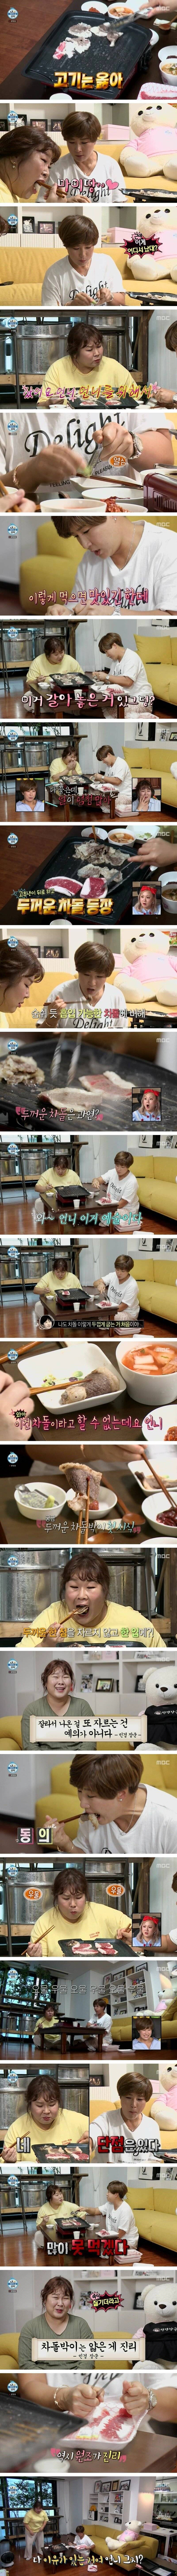 둘이서 차돌만 2kg 먹은 박세리, 김민경 | 인스티즈